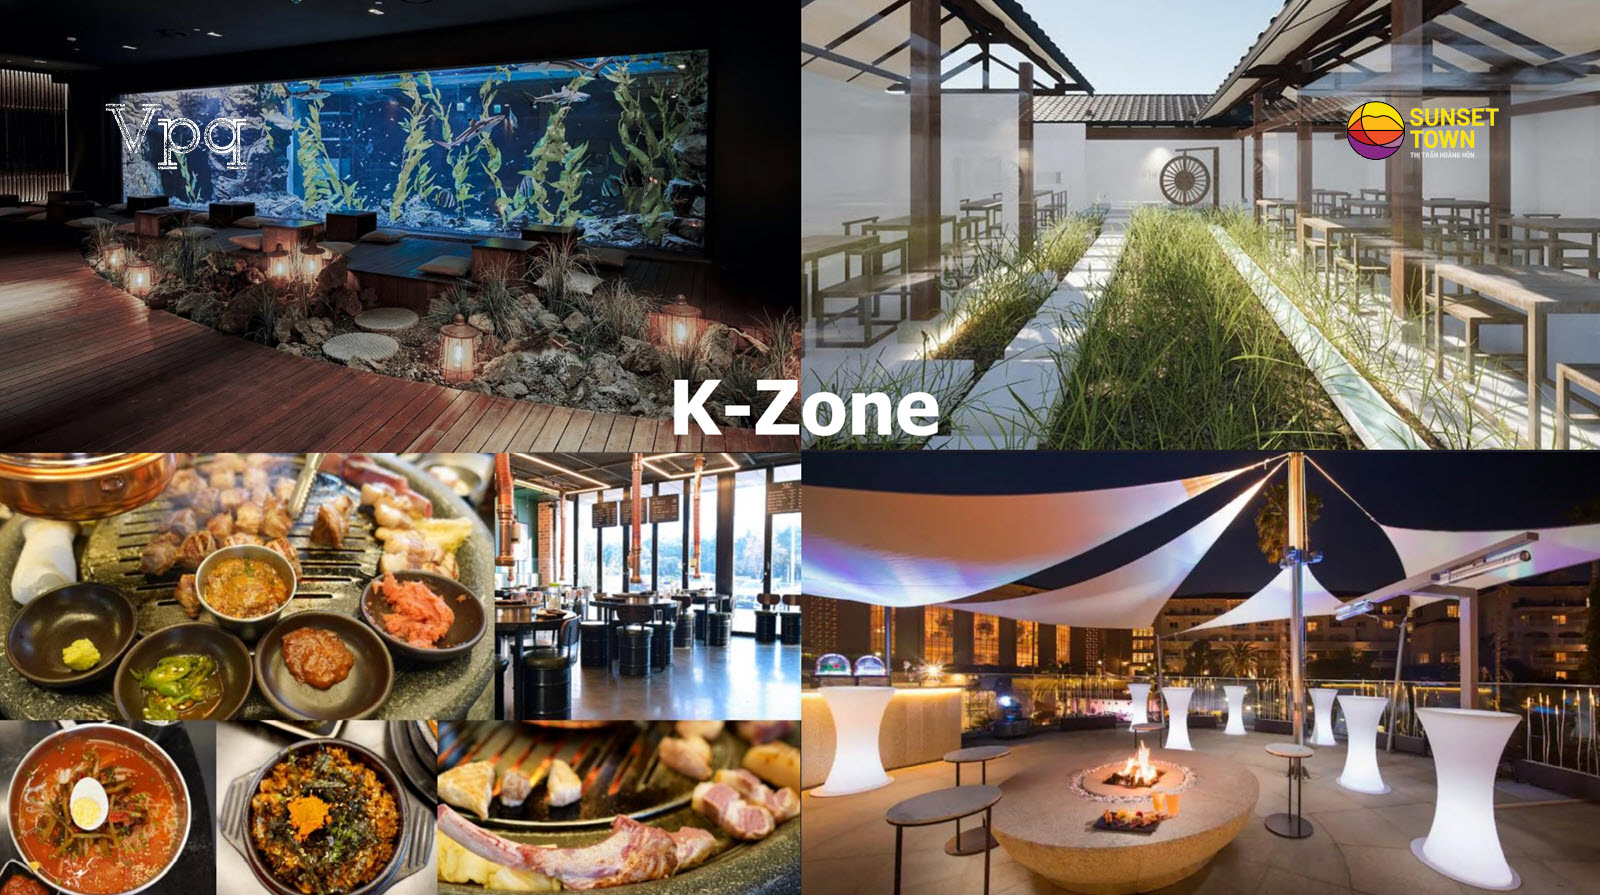 Khu vực ẩm thực K-Zone tại Sunset Town